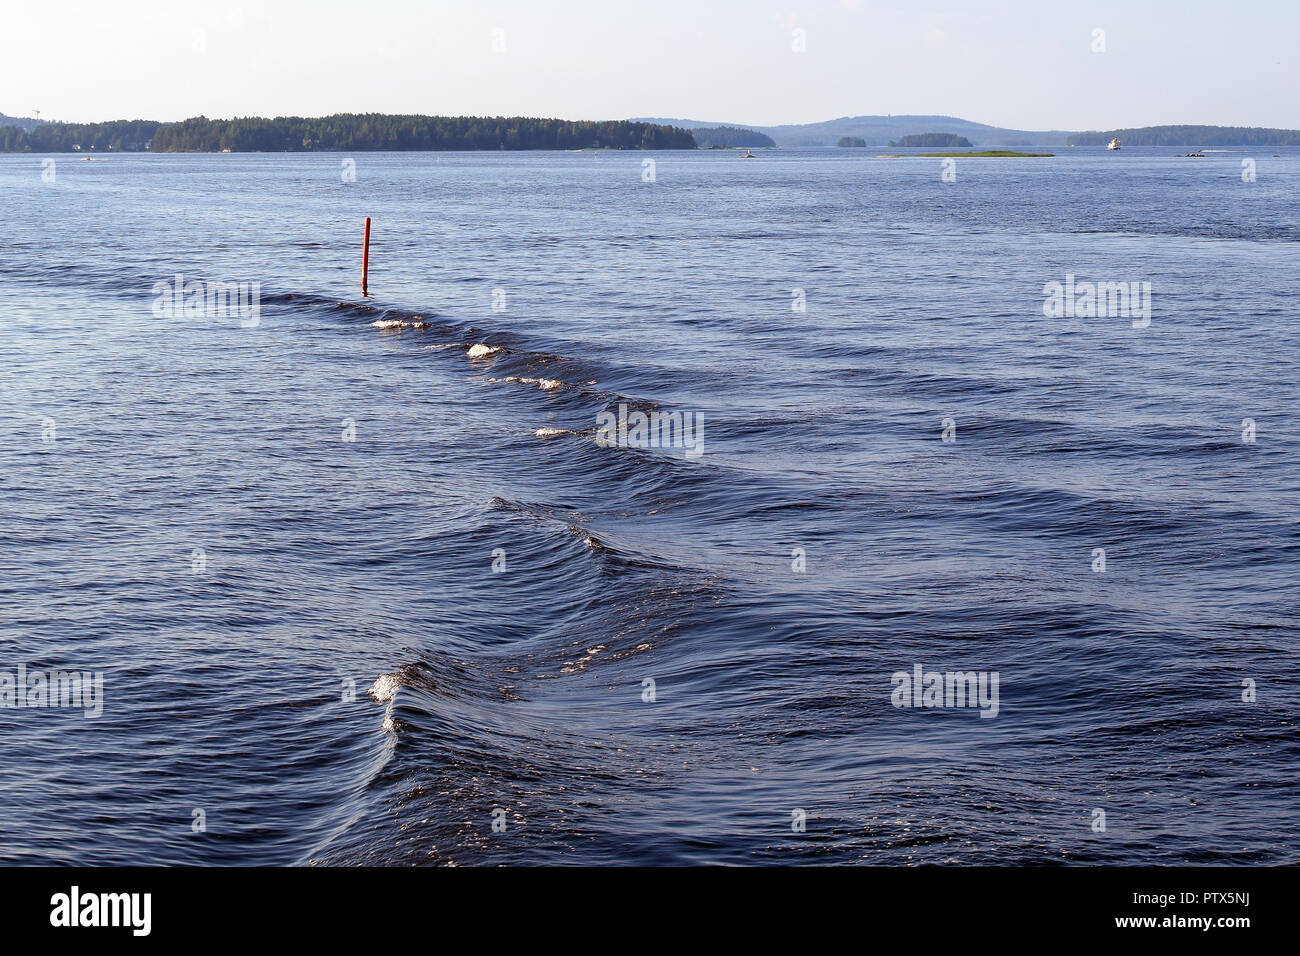 Piccola Onda stren e il bellissimo lago paesaggio. Posizione: lago Kallavesi, Kuopio, Finlandia. Foto Stock